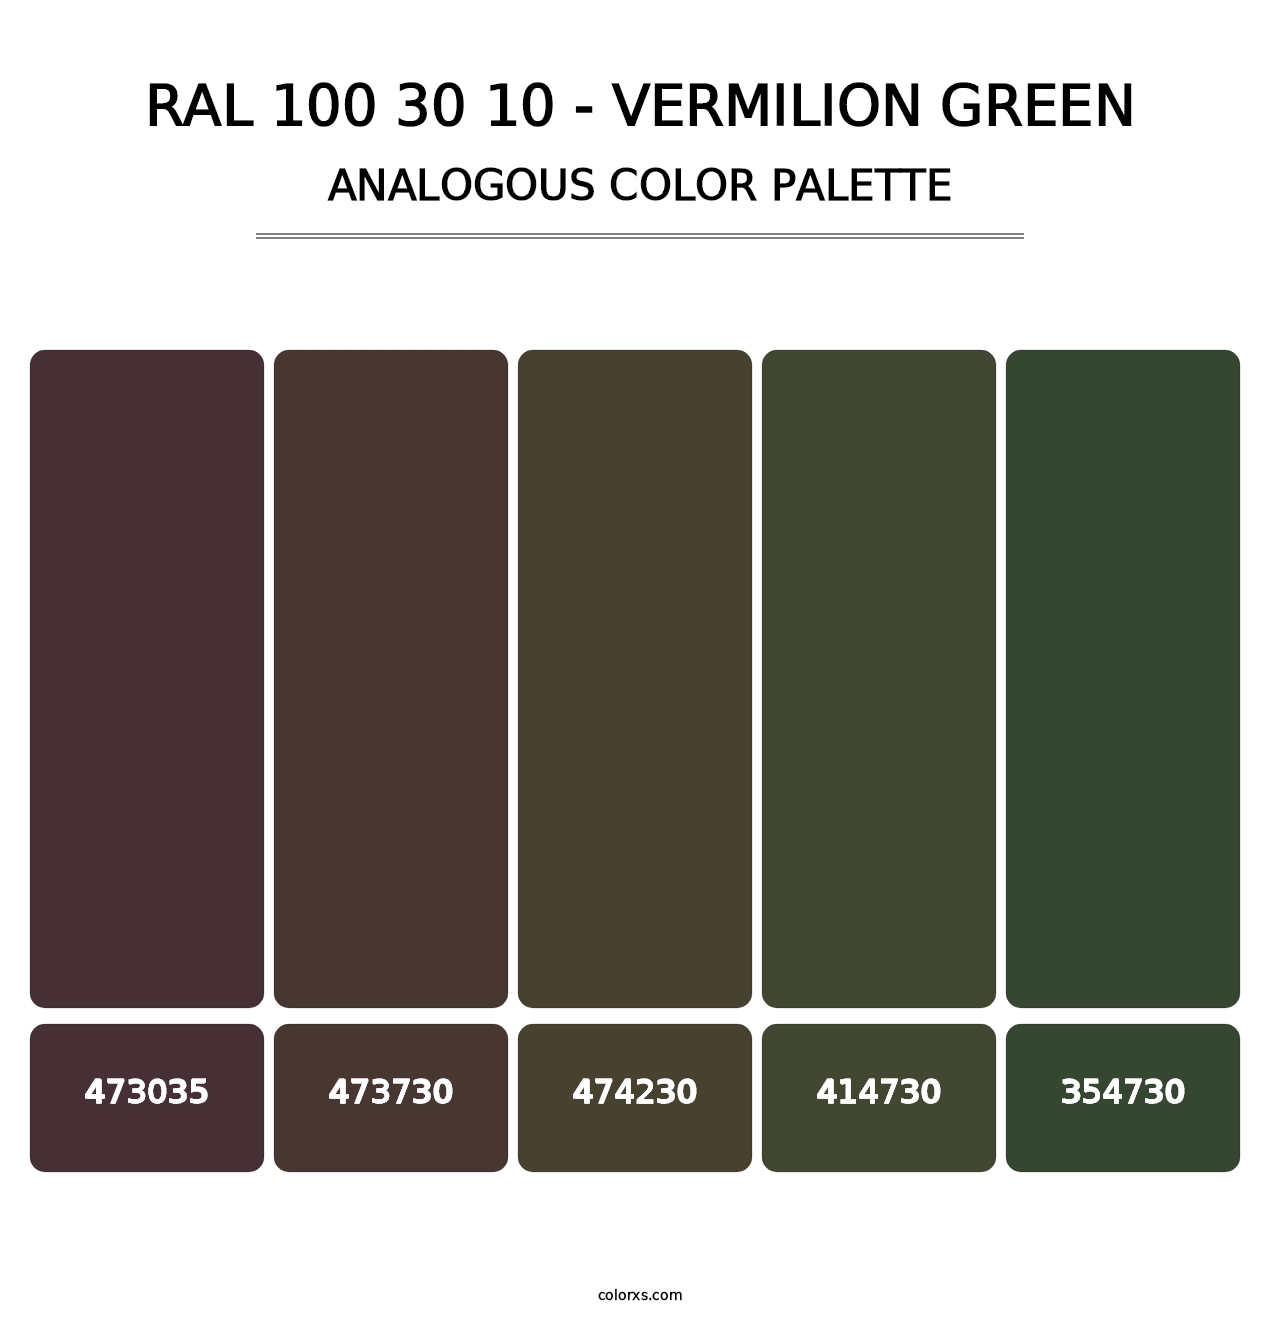 RAL 100 30 10 - Vermilion Green - Analogous Color Palette